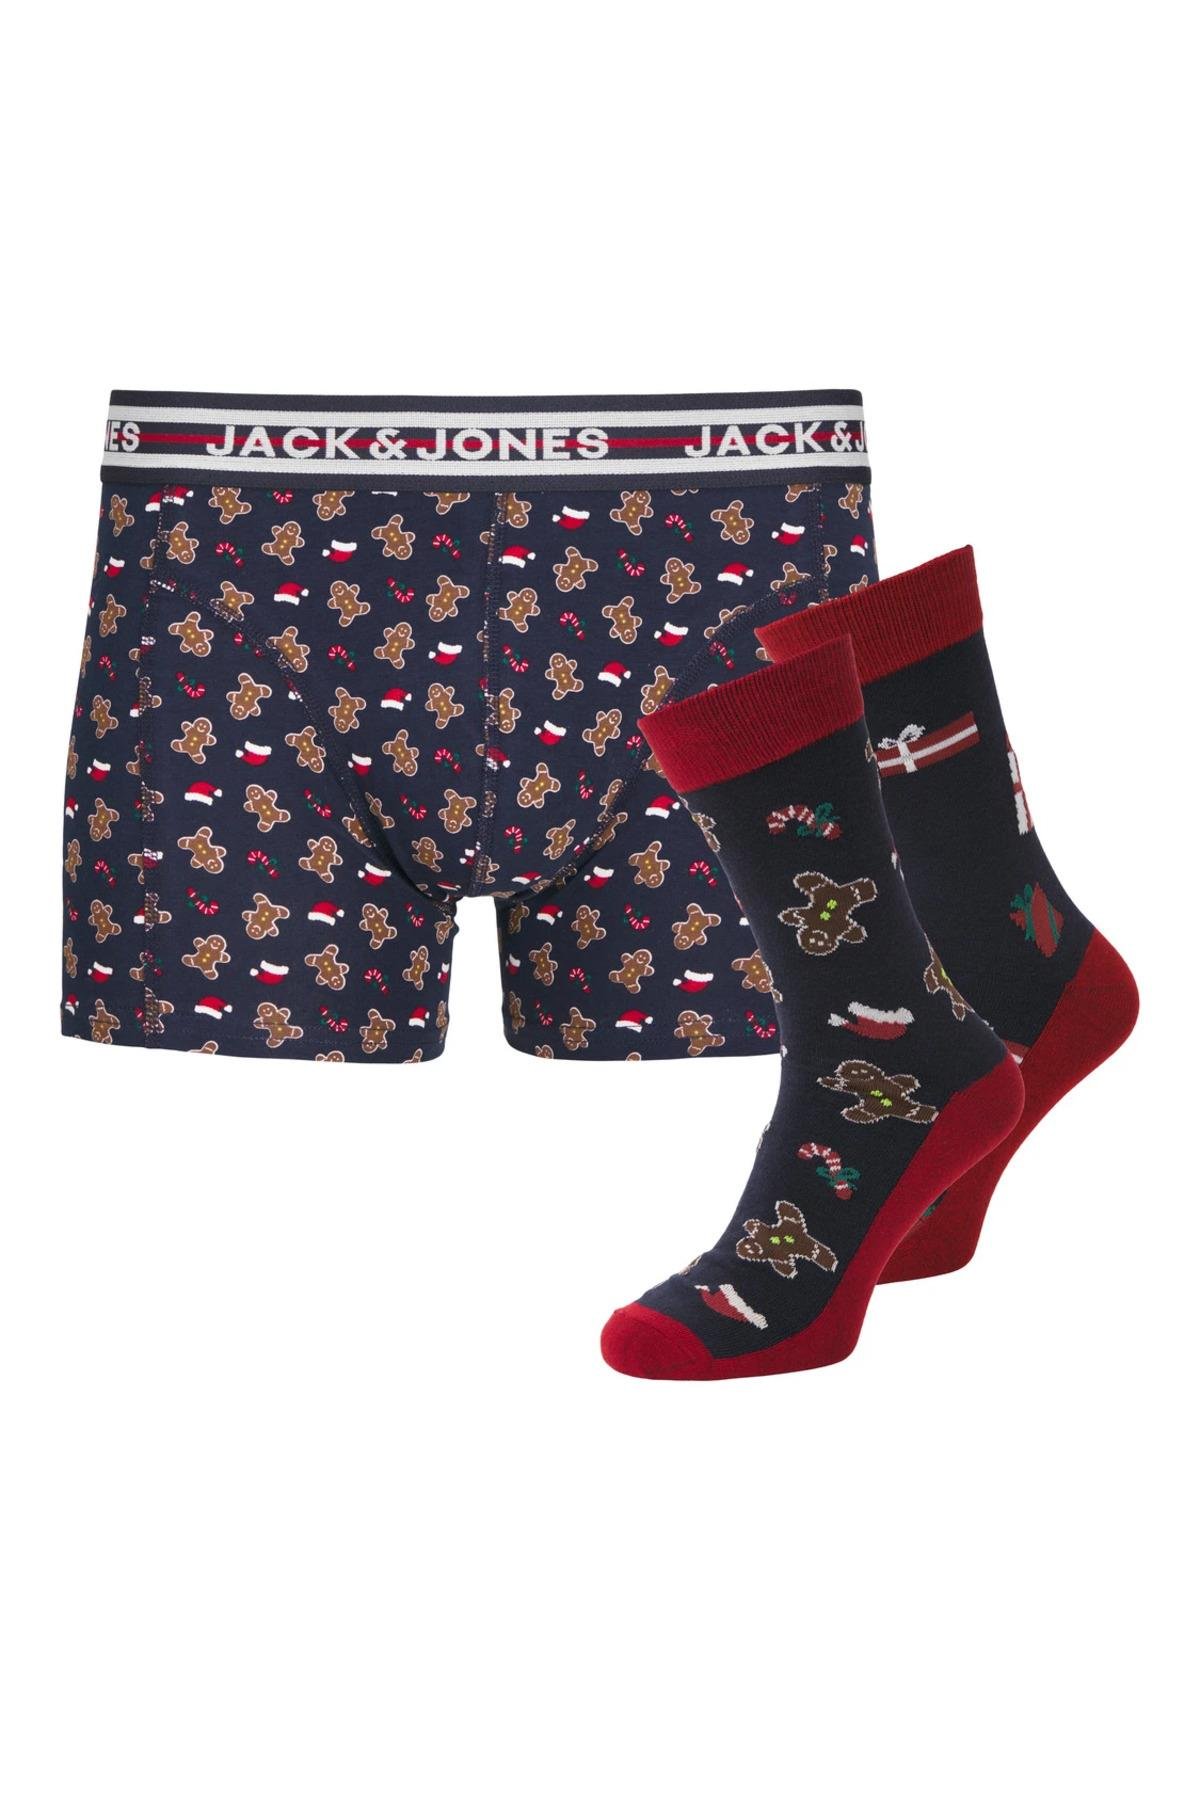 Jack & Jones Erkek Xmas Yılbaşı Boxer Çorap Seti - 12246128